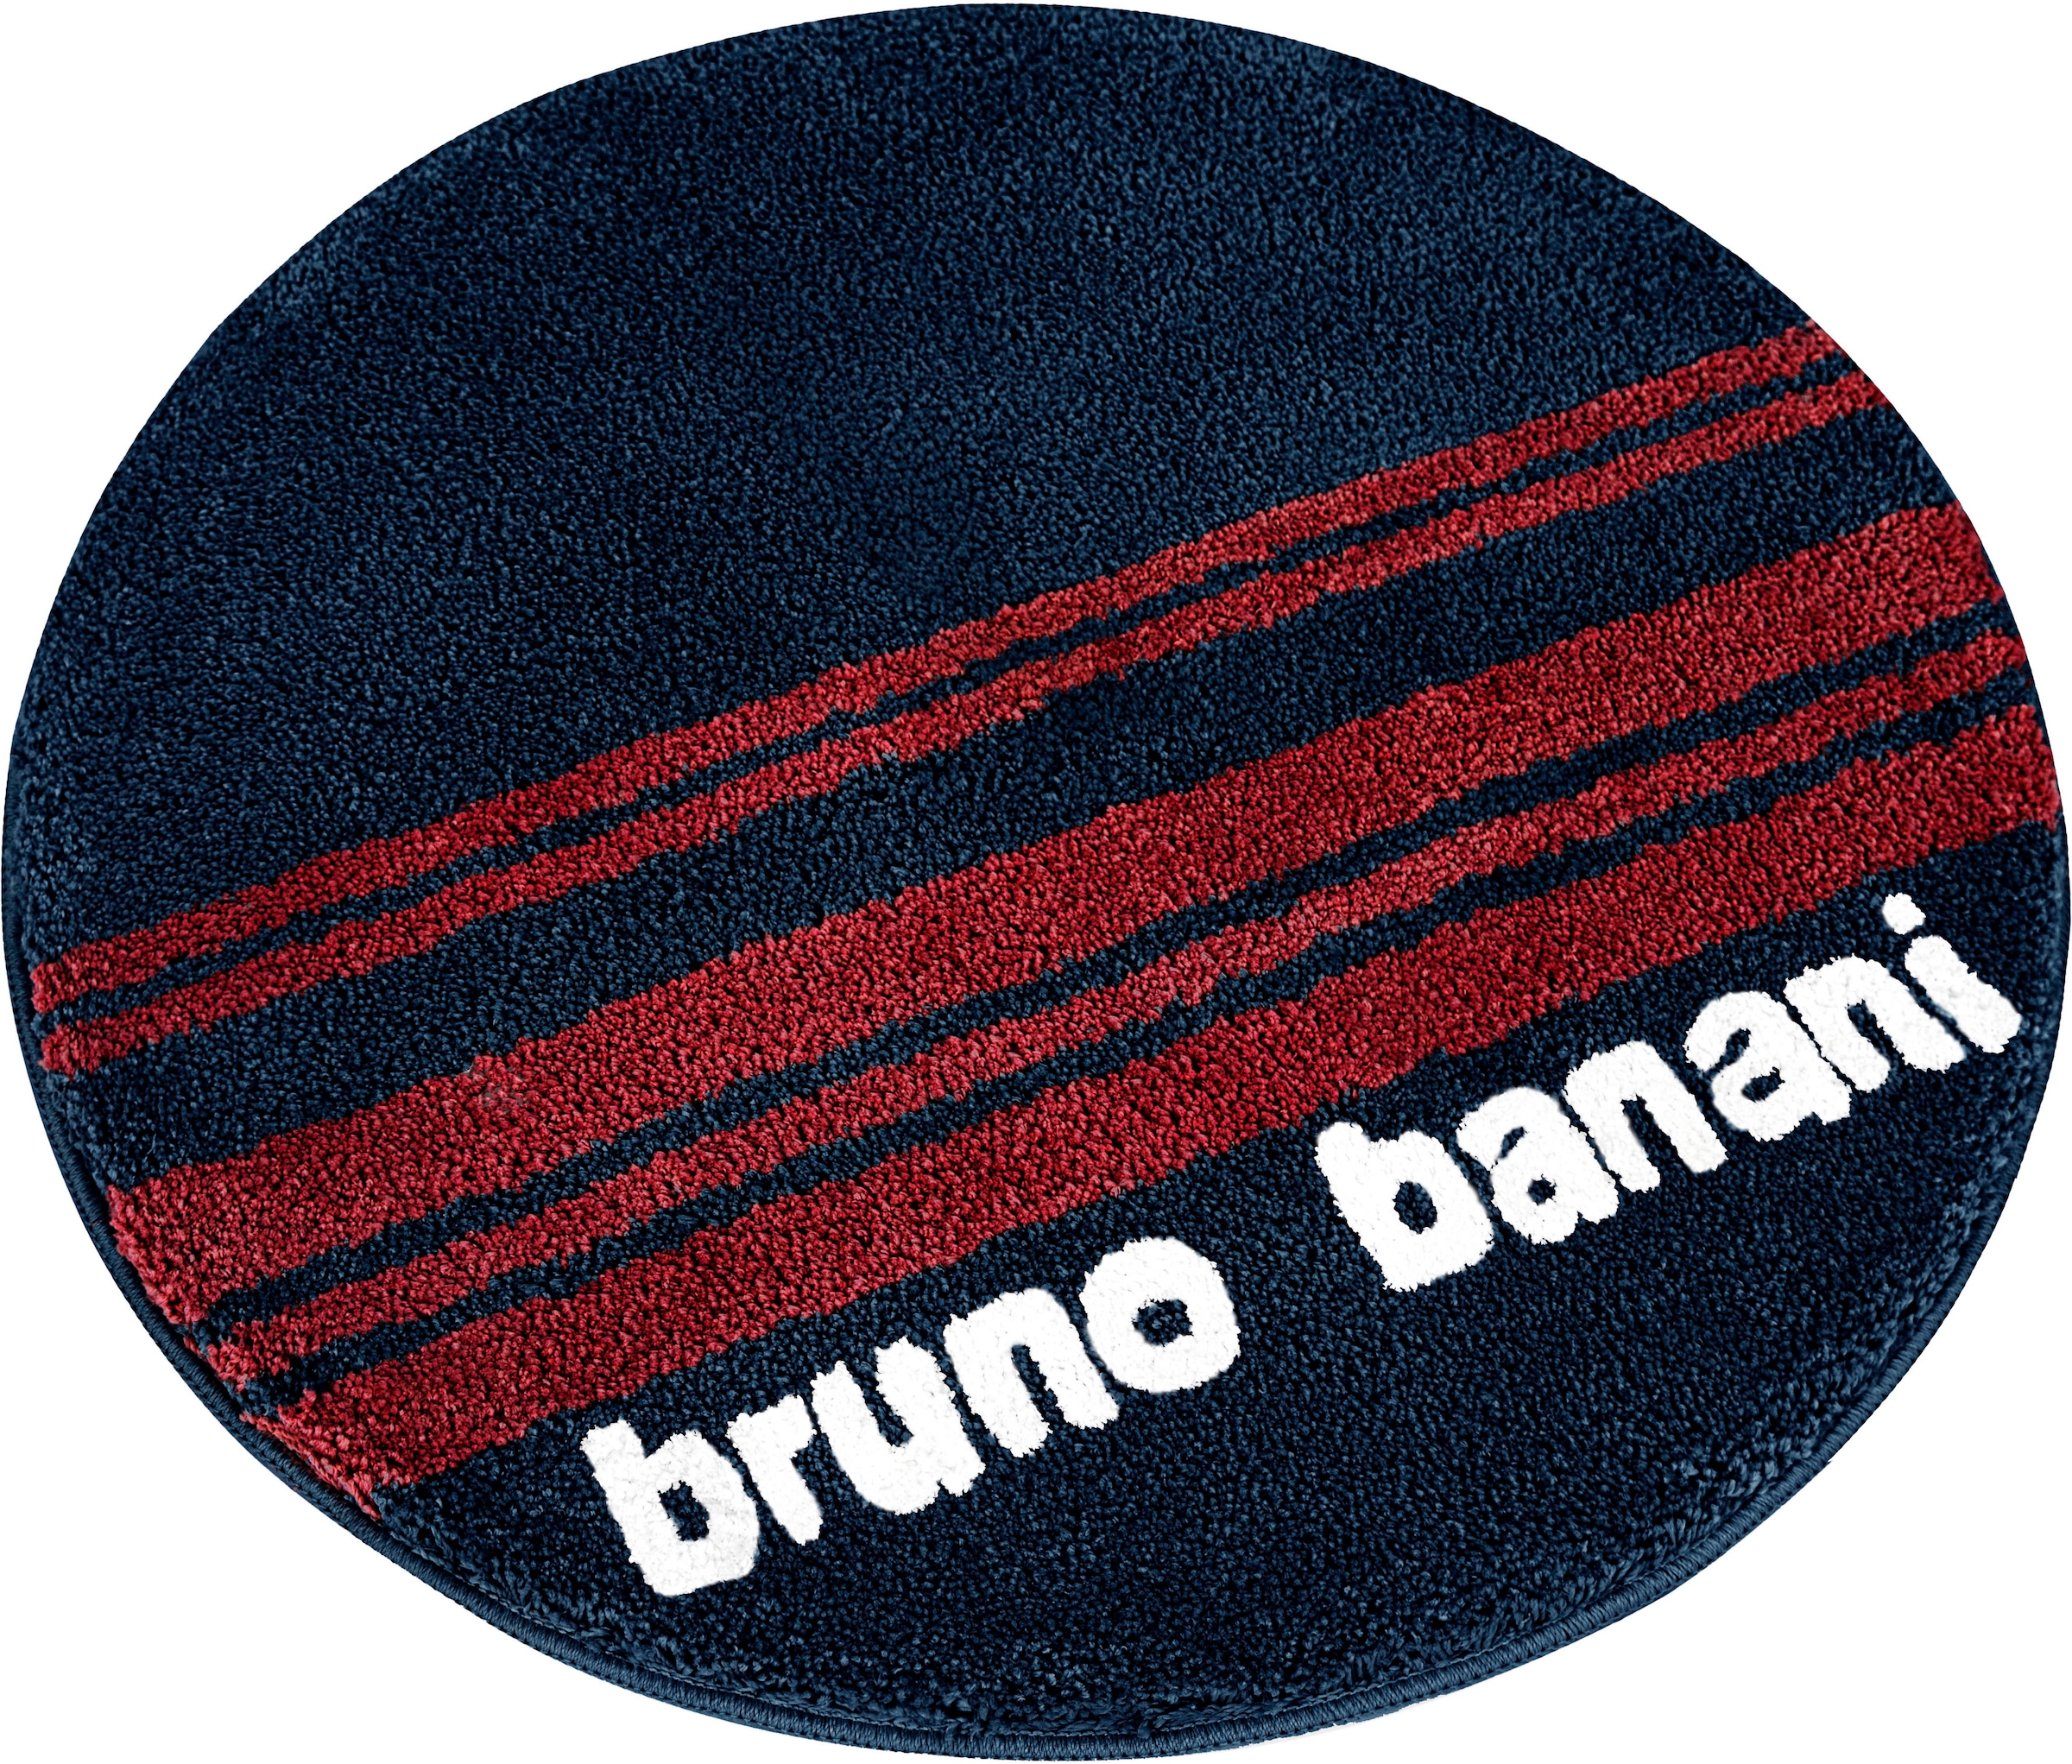 Bruno Banani Badematte »Daniel«, Höhe 20 mm, rutschhemmend beschichtet, fussbodenheizungsgeeignet-strapazierfähig-schnell trocknend, mit Streifen, Badteppich, Badematten auch als 3 tlg. Set erhältlich